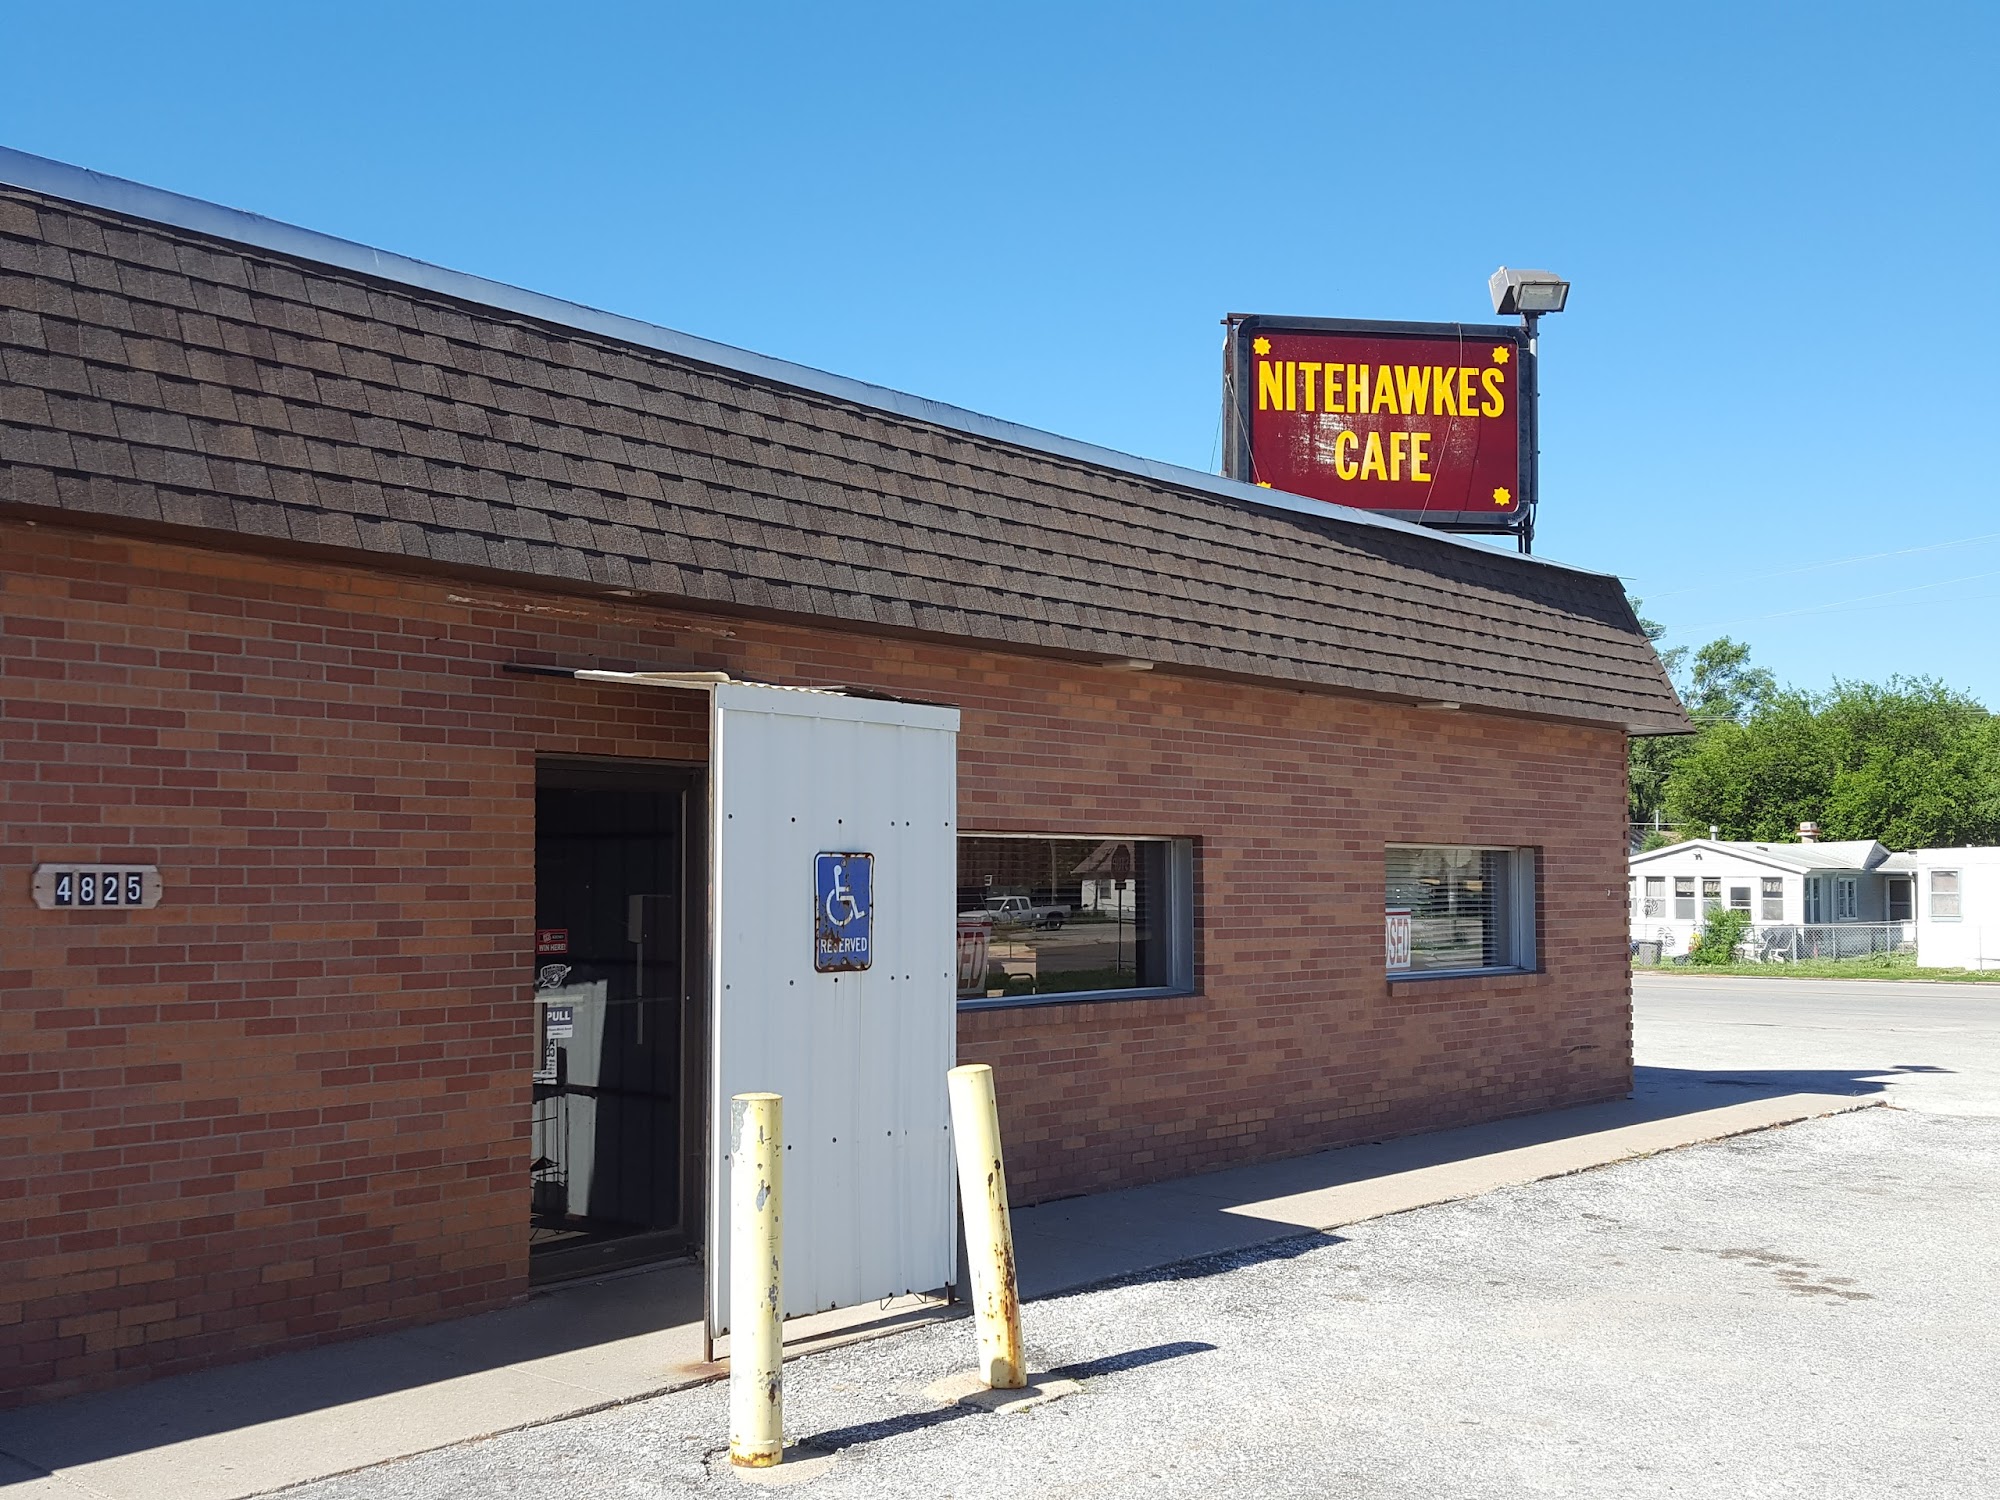 Nite Hawkes Cafe 4825 N 16th St, Omaha, NE 68110